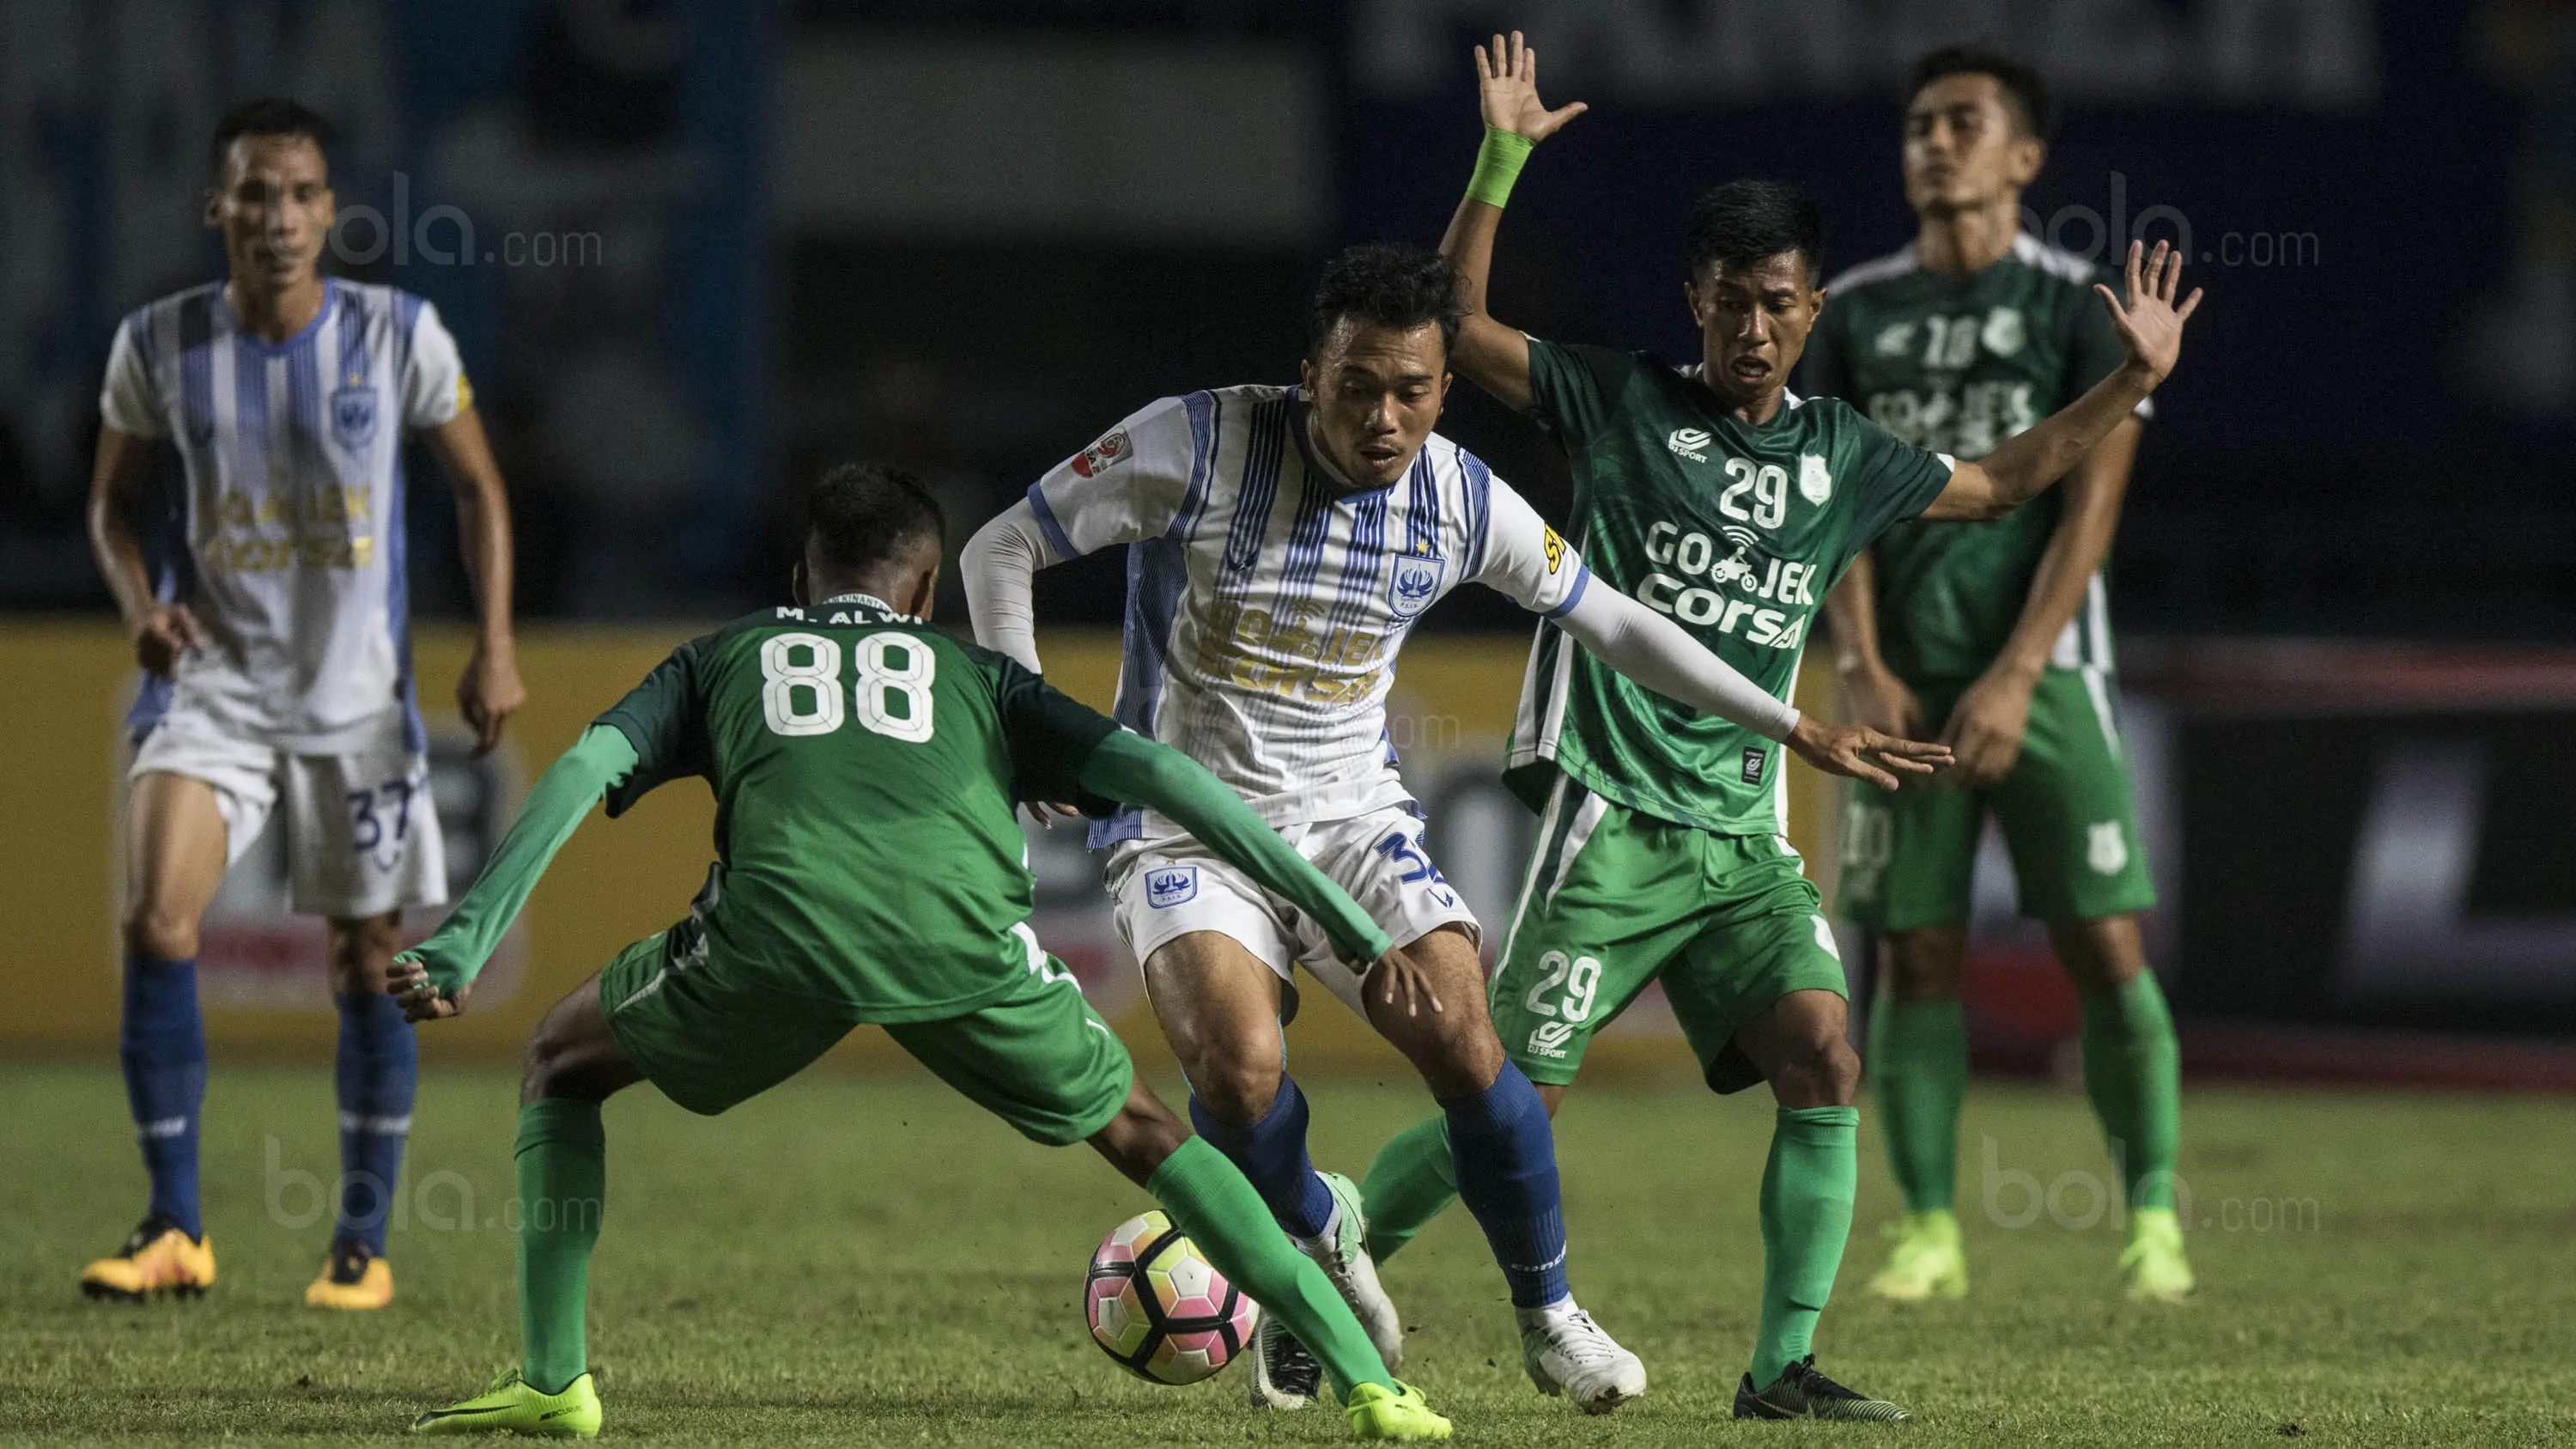 Gelandang PSMS, Muhamad Yunus, berusaha melewati pemain PSIS pada laga semifinal Liga 2 2017 di Stadion GBLA, Bandung, Sabtu (25/11/2017). PSMS menang 2-0 atas PSIS. (Bola.com/Vitalis Yogi Trisna)